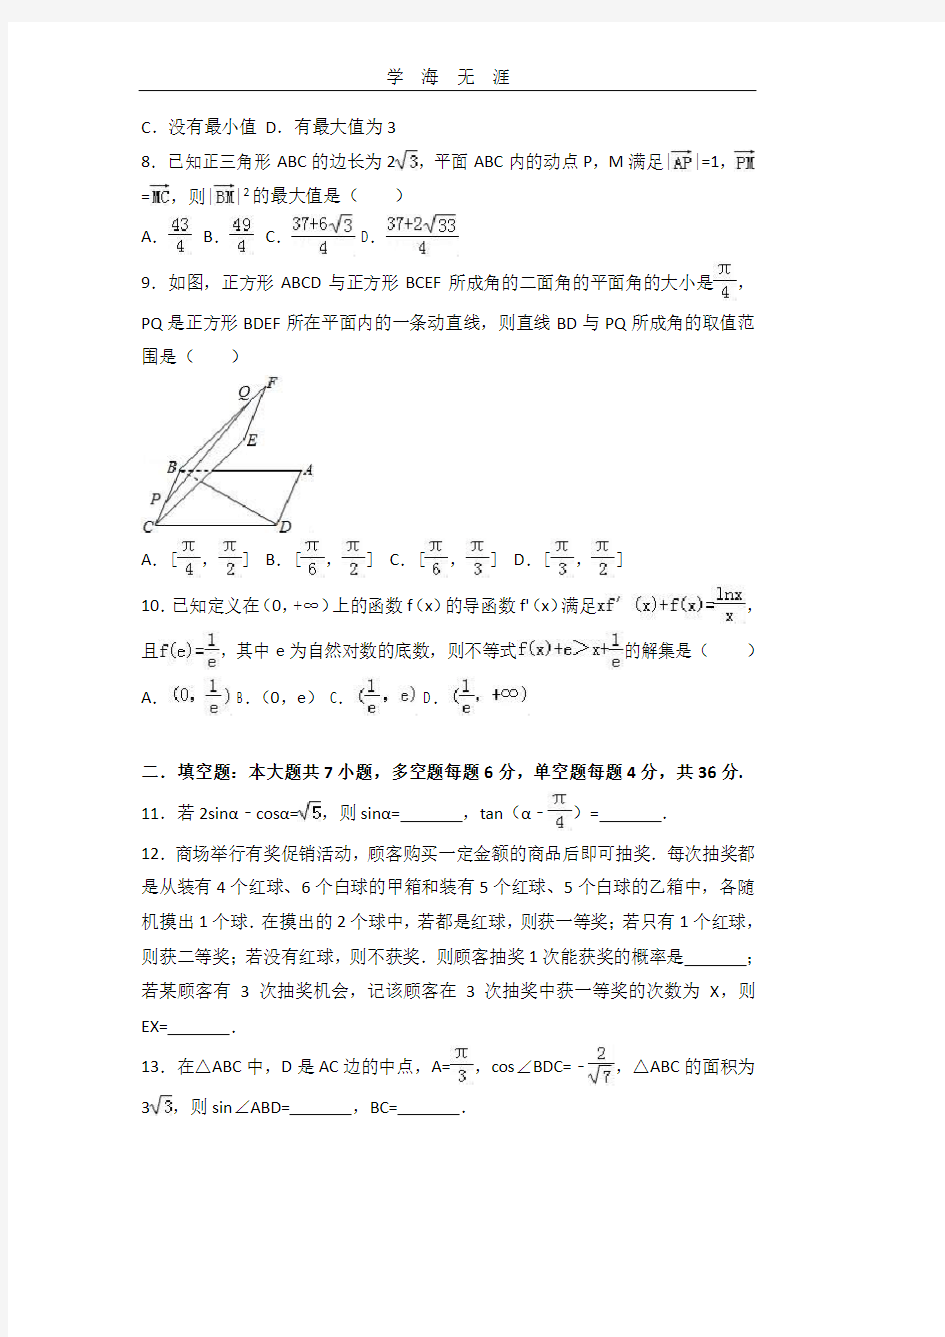 浙江省杭州市学军中学高考数学模拟试卷(份).pdf